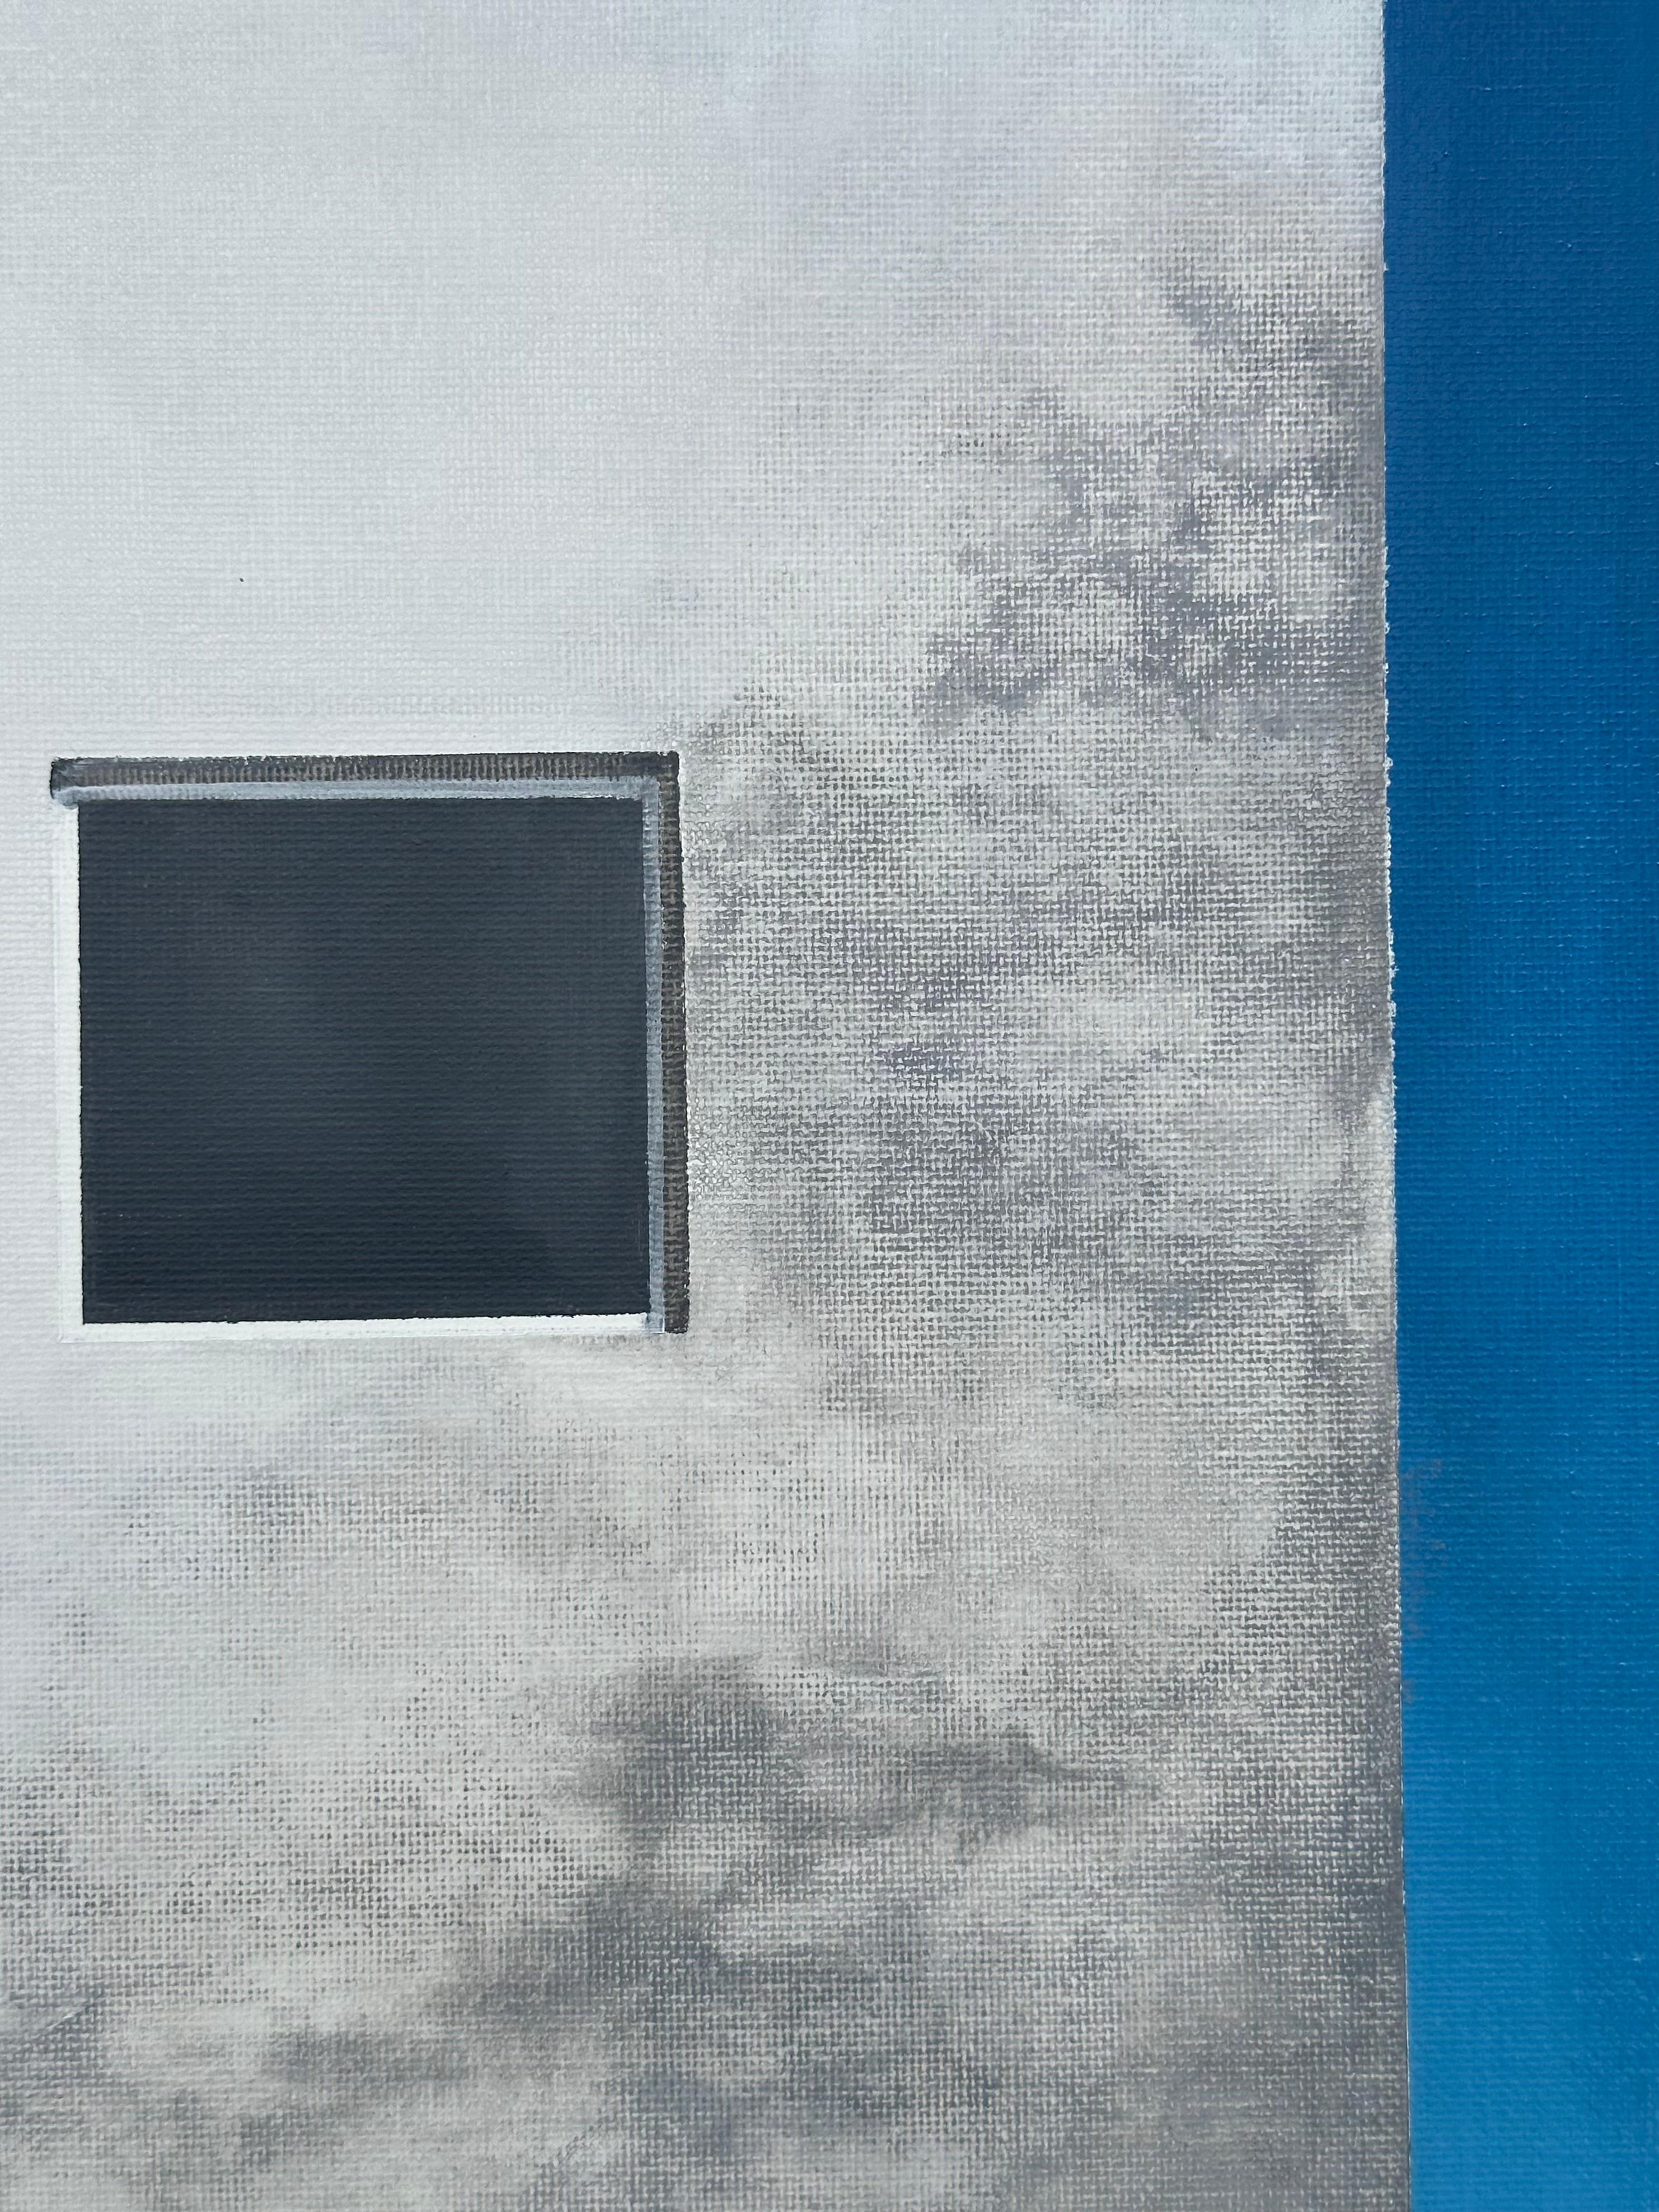 <p>Kommentare des Künstlers<br>Zwei moderne Gebäude, eines in rohem Siena, das andere in Weiß, stehen nebeneinander vor einem tiefblauen Himmel. Das Tageslicht im Hintergrund kontrastiert mit den Strukturen und hebt ihre scharfen Linien hervor. Die